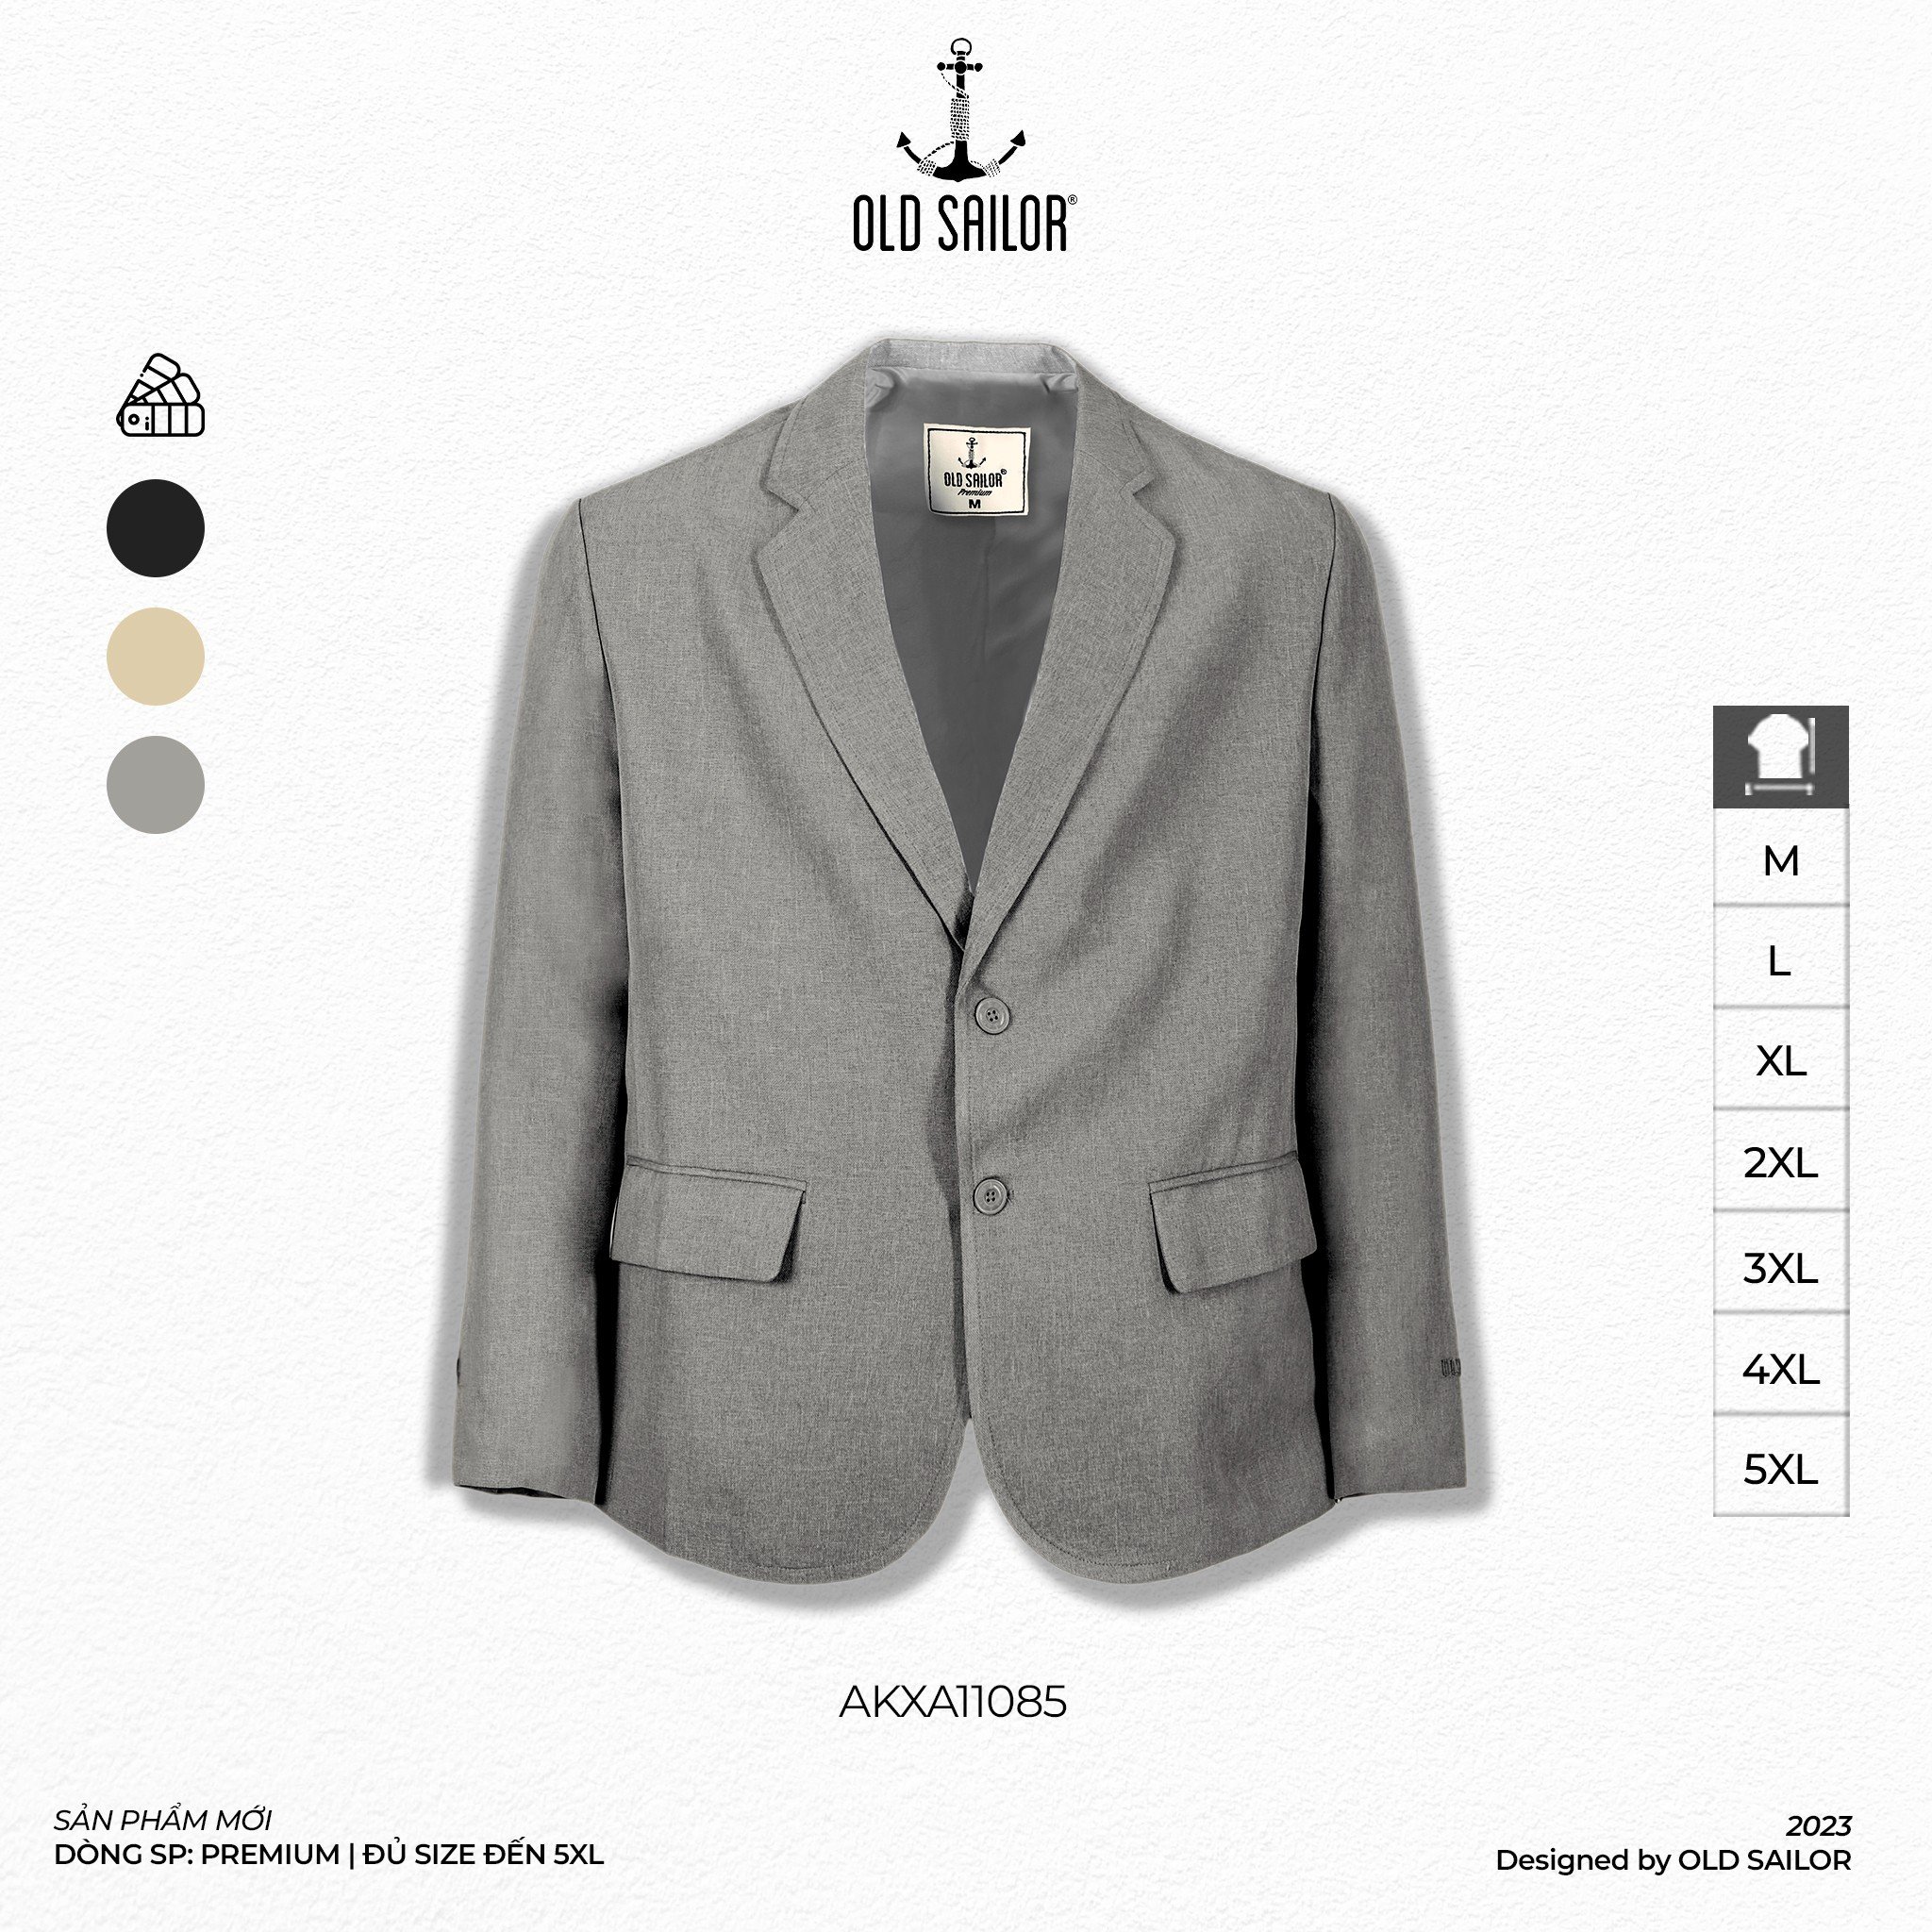 Áo khoác blazer Old Sailor - O.S.L PREMIUM BLAZER - AKXA11085 - xám - Big size upto 5XL